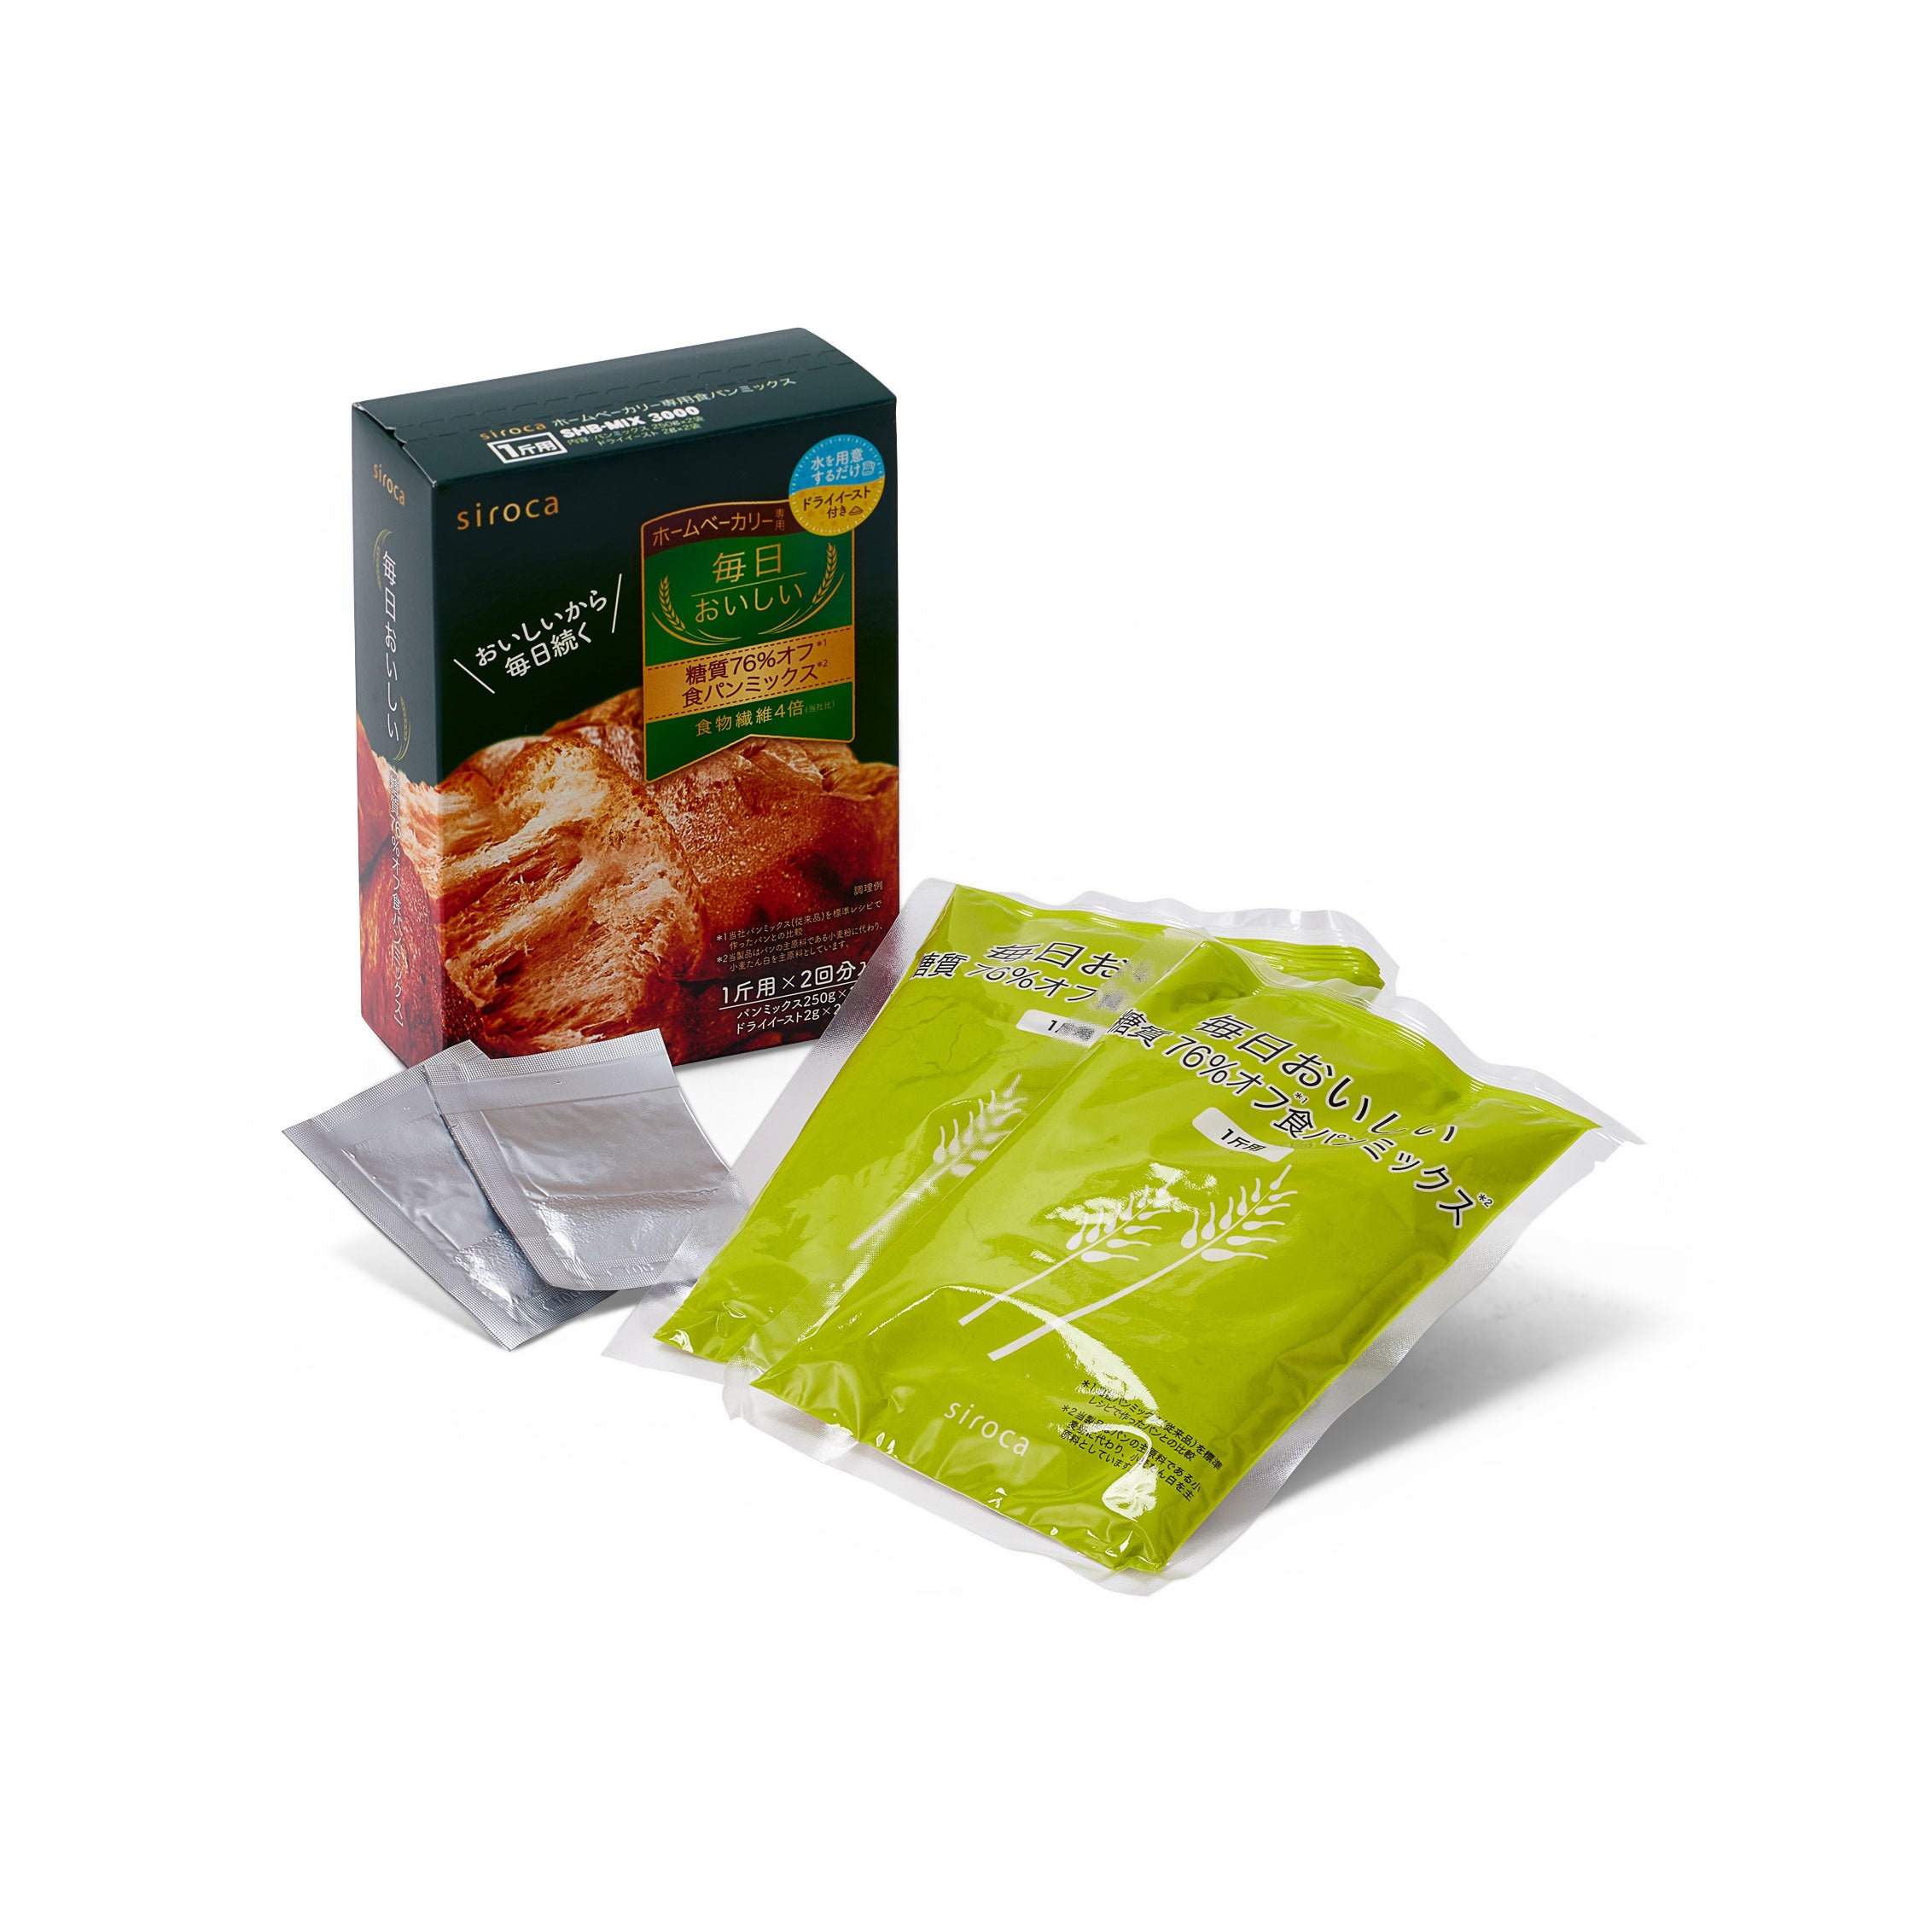 シロカ×ニップン 食パンミックス (1斤×2袋) 糖質76%オフ SHB-MIX3000 シロカオンラインストア